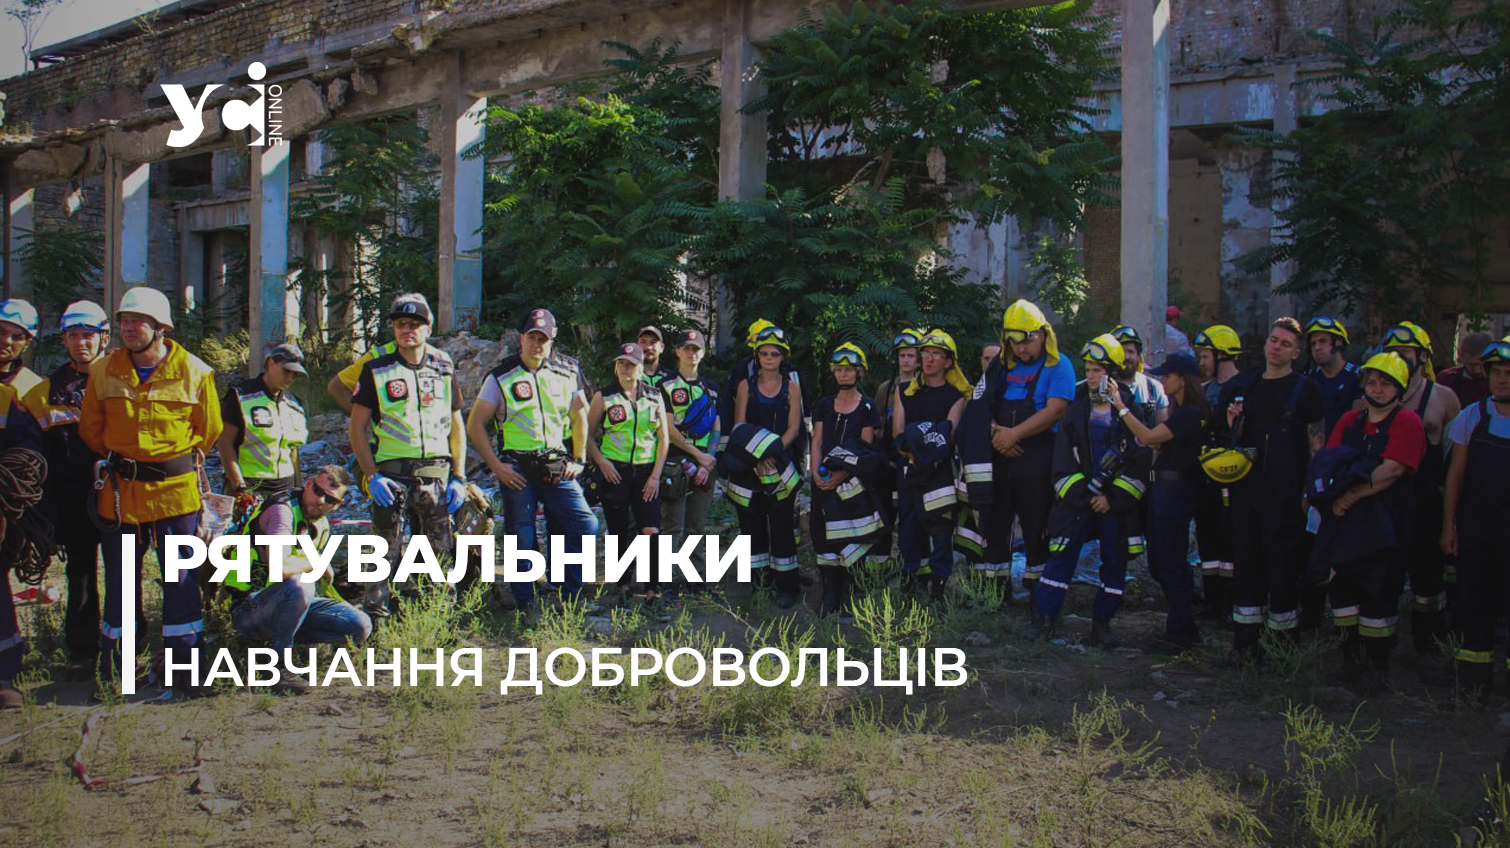 «Вибух на підприємстві»: в Одесі пройшло навчання добровольців-рятувальників (фото, відео) «фото»